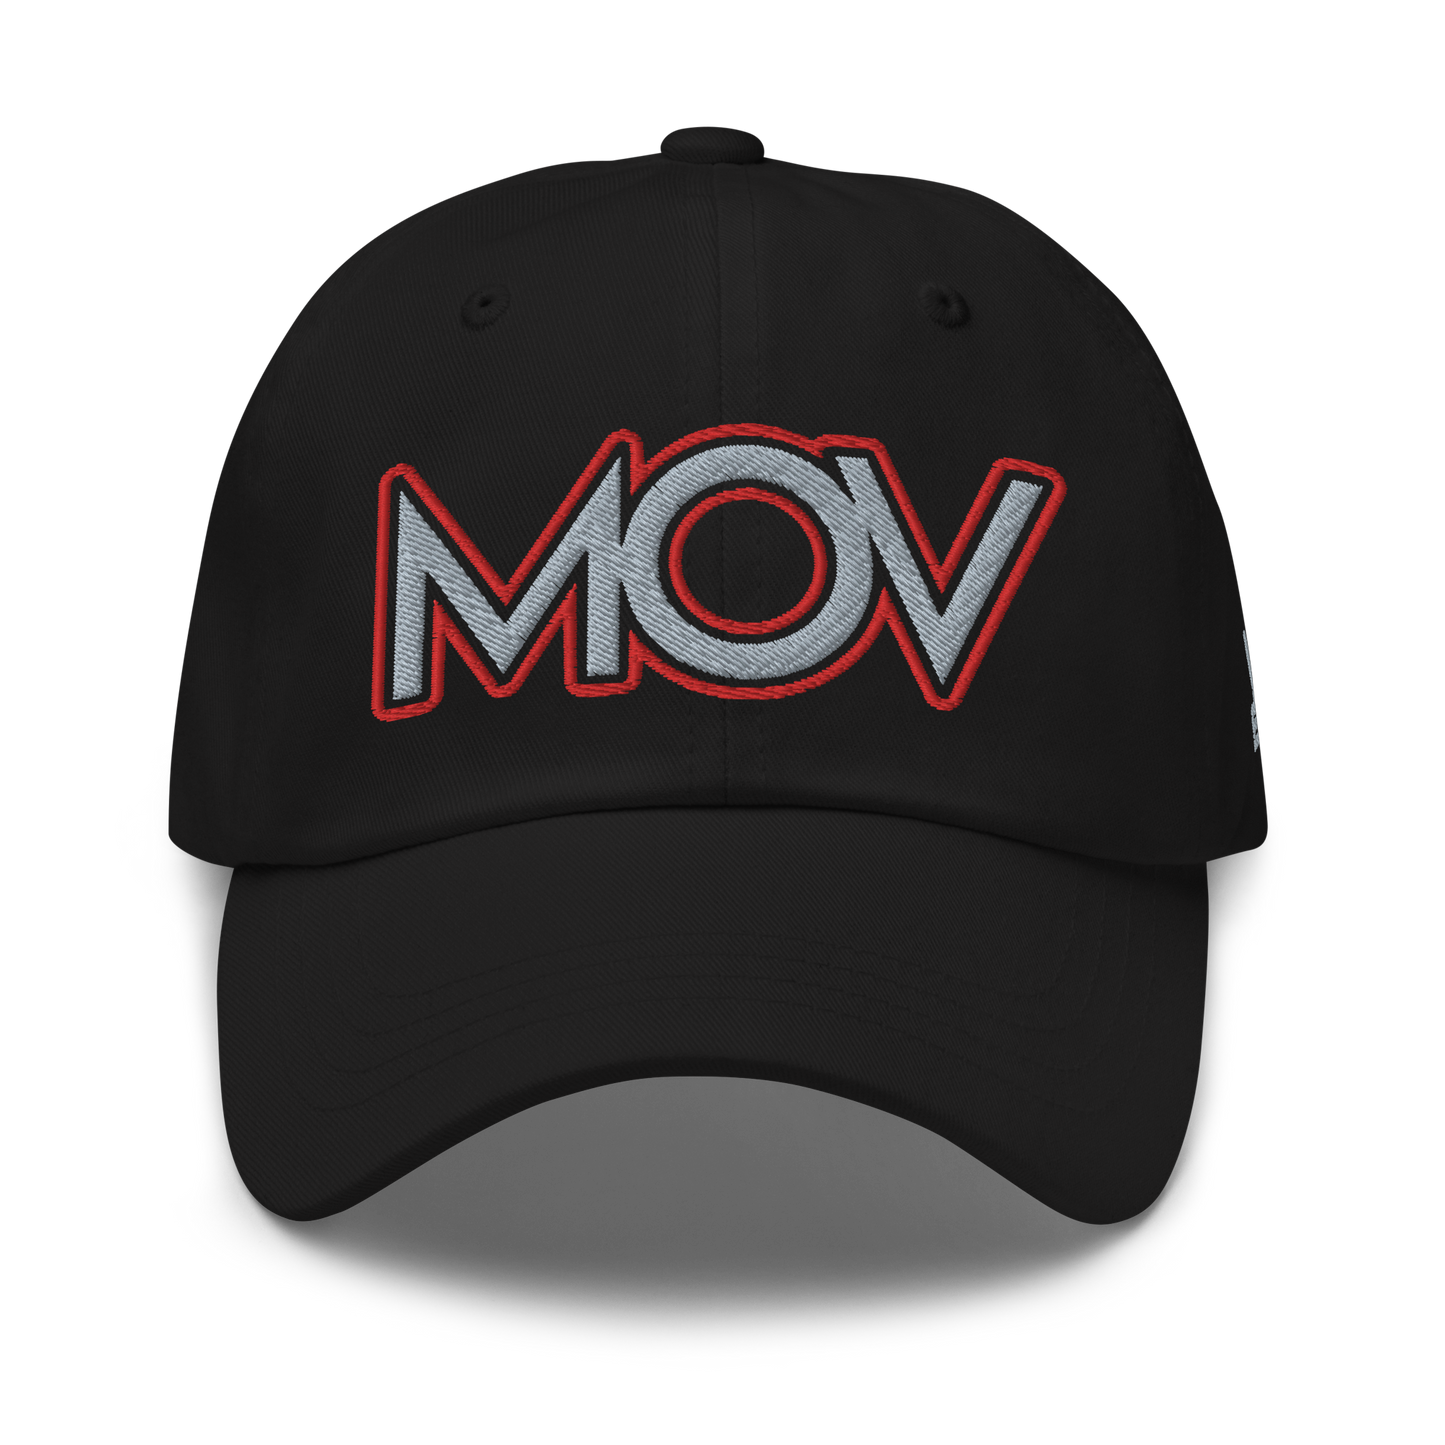 MOV Dad hat (5 colors)